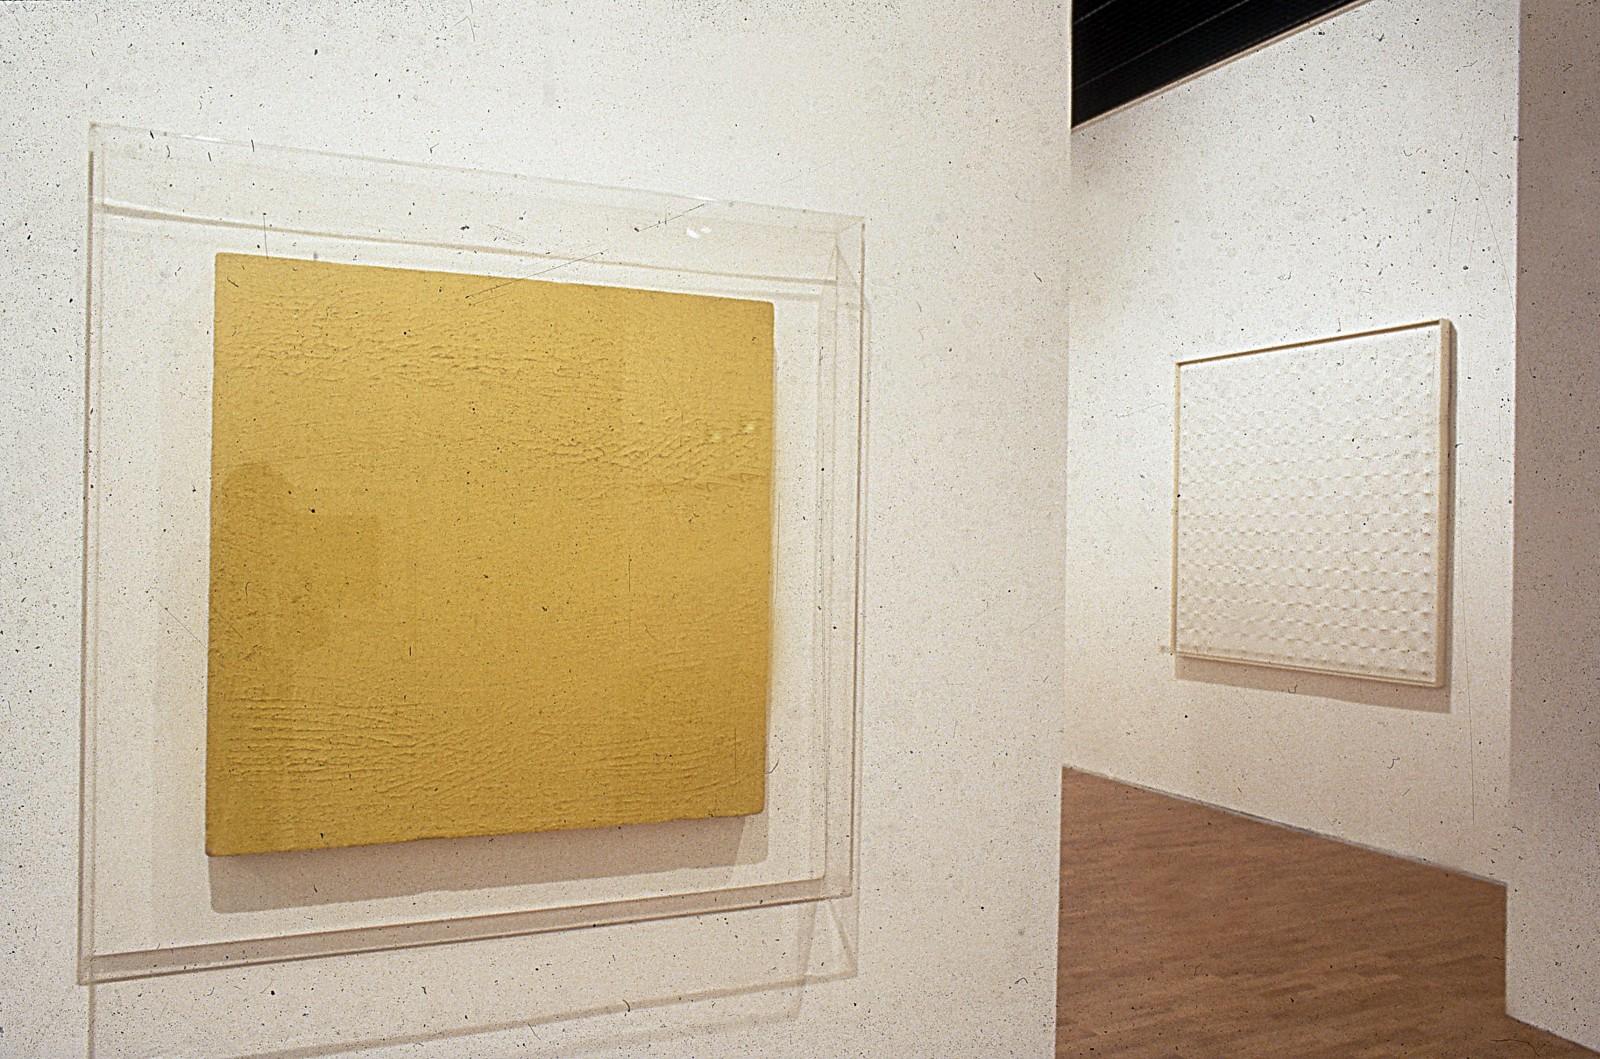 Vue de l'exposition "La Couleur seule : l'expérience du monochrome", Musée Saint-Pierre art contemporain, 1988 (M 46)